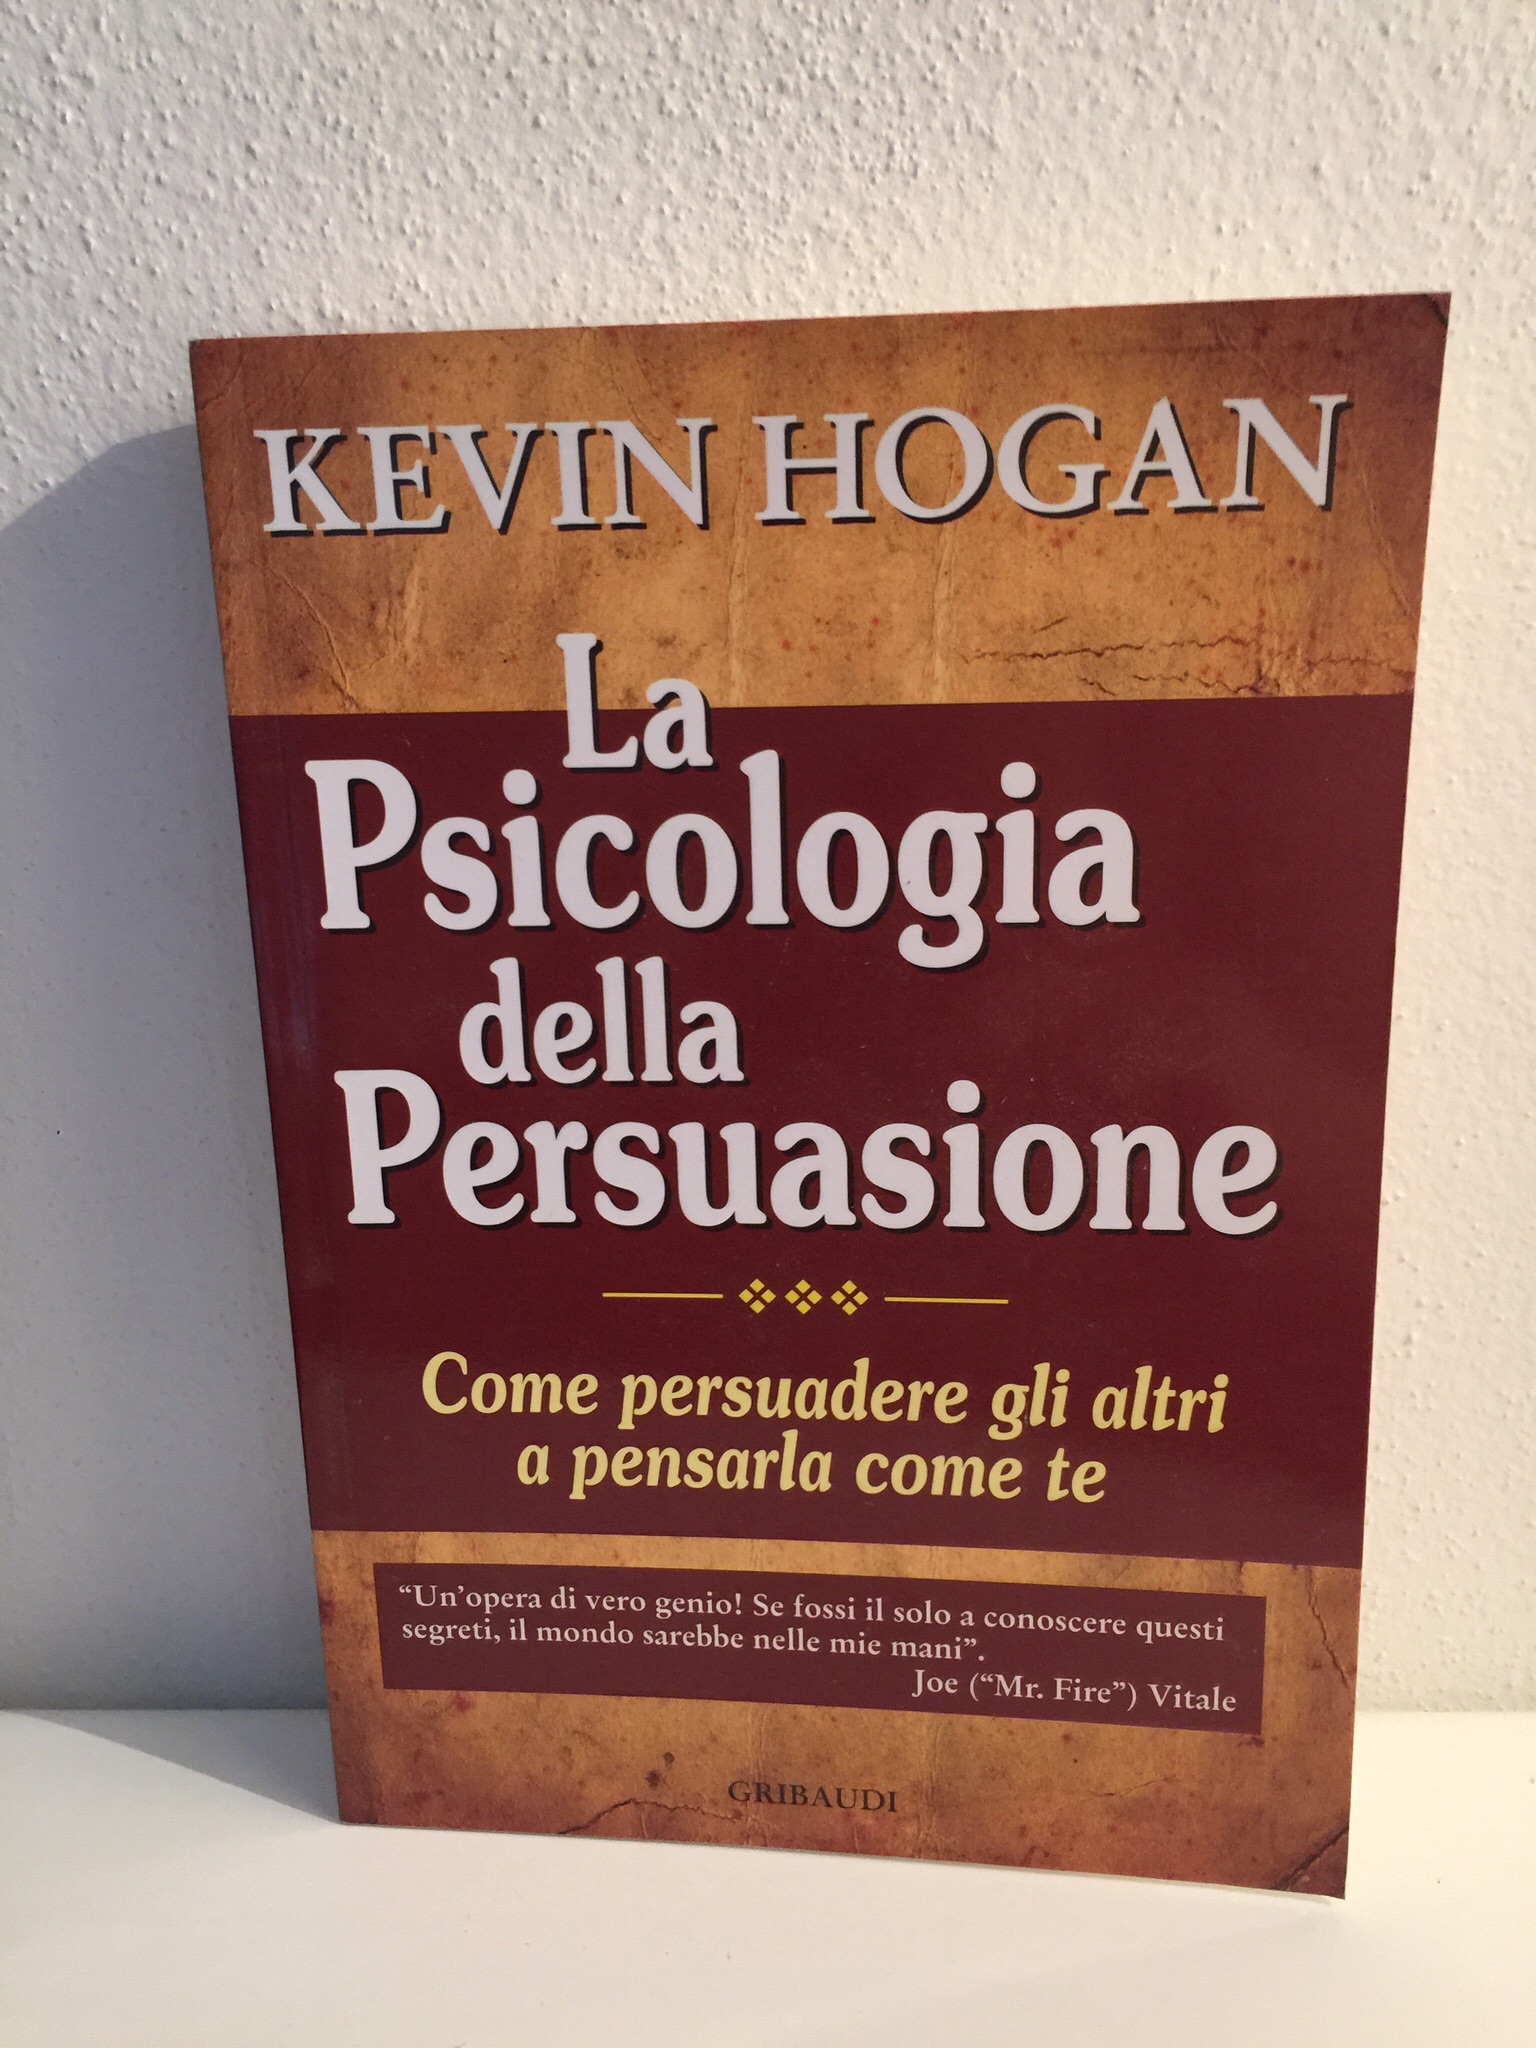 Kevin Hogan – La Psicologia della Persuasione